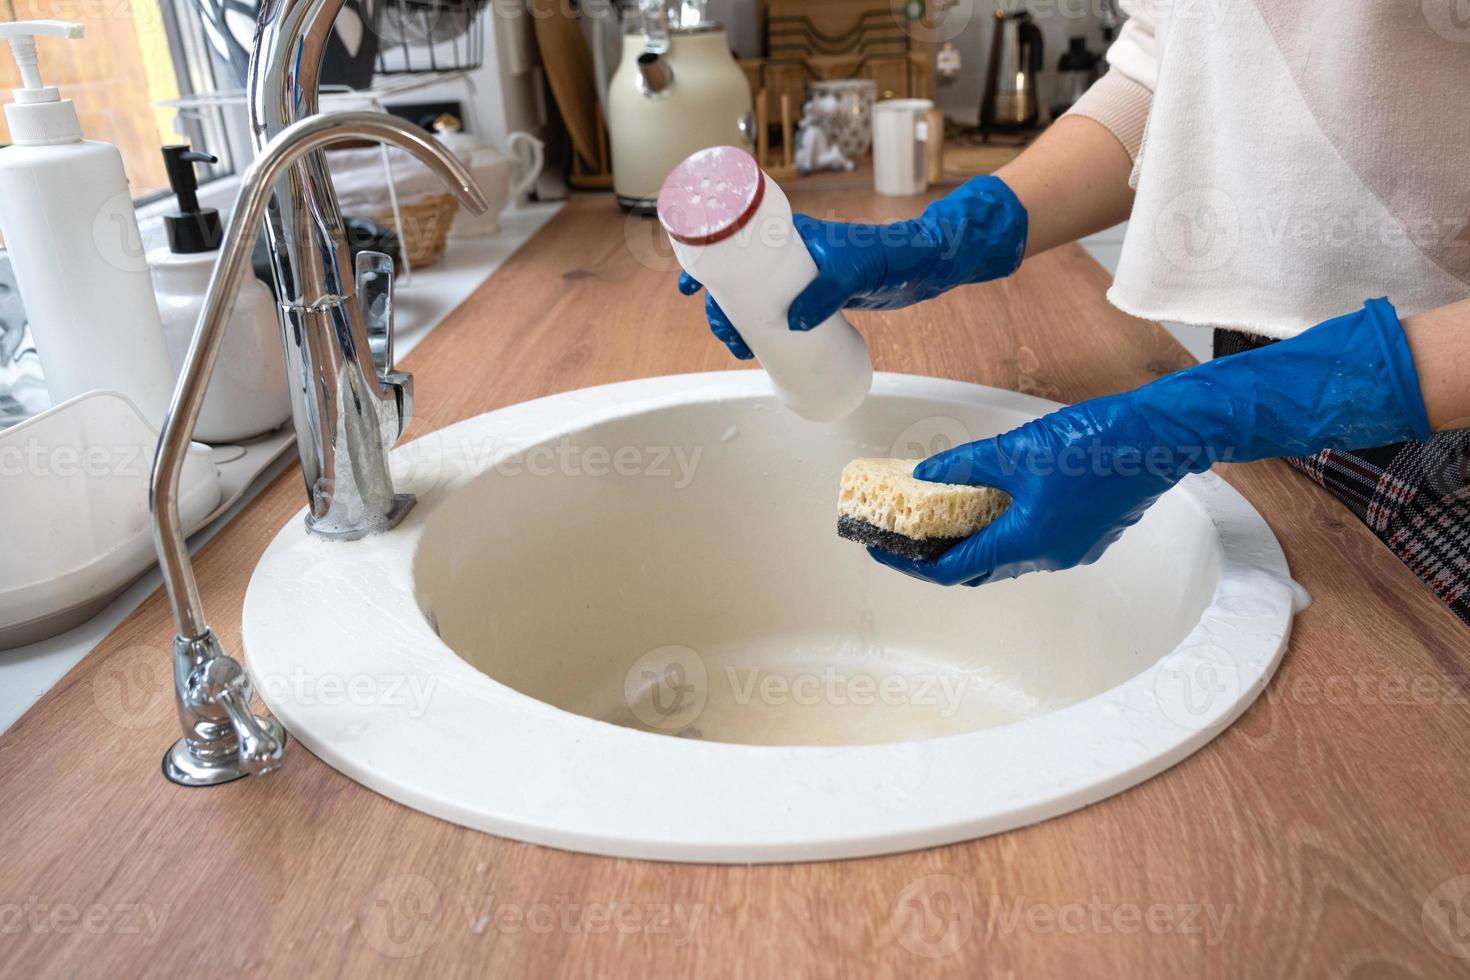 Reinigungsspüle in der Küche, Hand in Handschuhen und Schwamm, Reinigungsmittel, Trockenpulver. gemütliche Einrichtung des Hauses, Wiederherstellung der Ordnung, Sauberkeit, Desinfektion foto